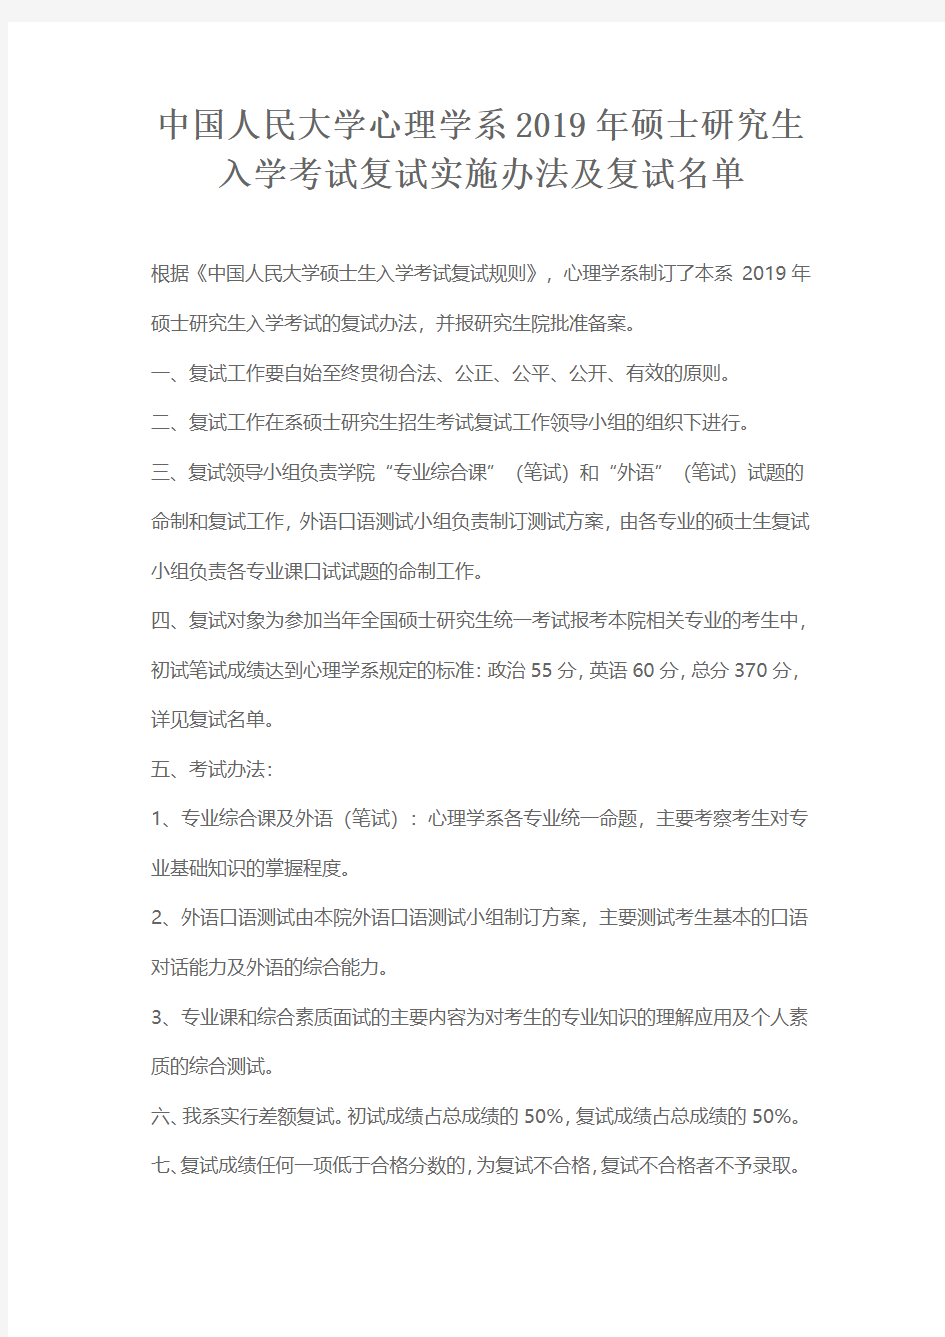 中国人民大学心理学系2019年硕士研究生入学考试复试实施办法及复试名单